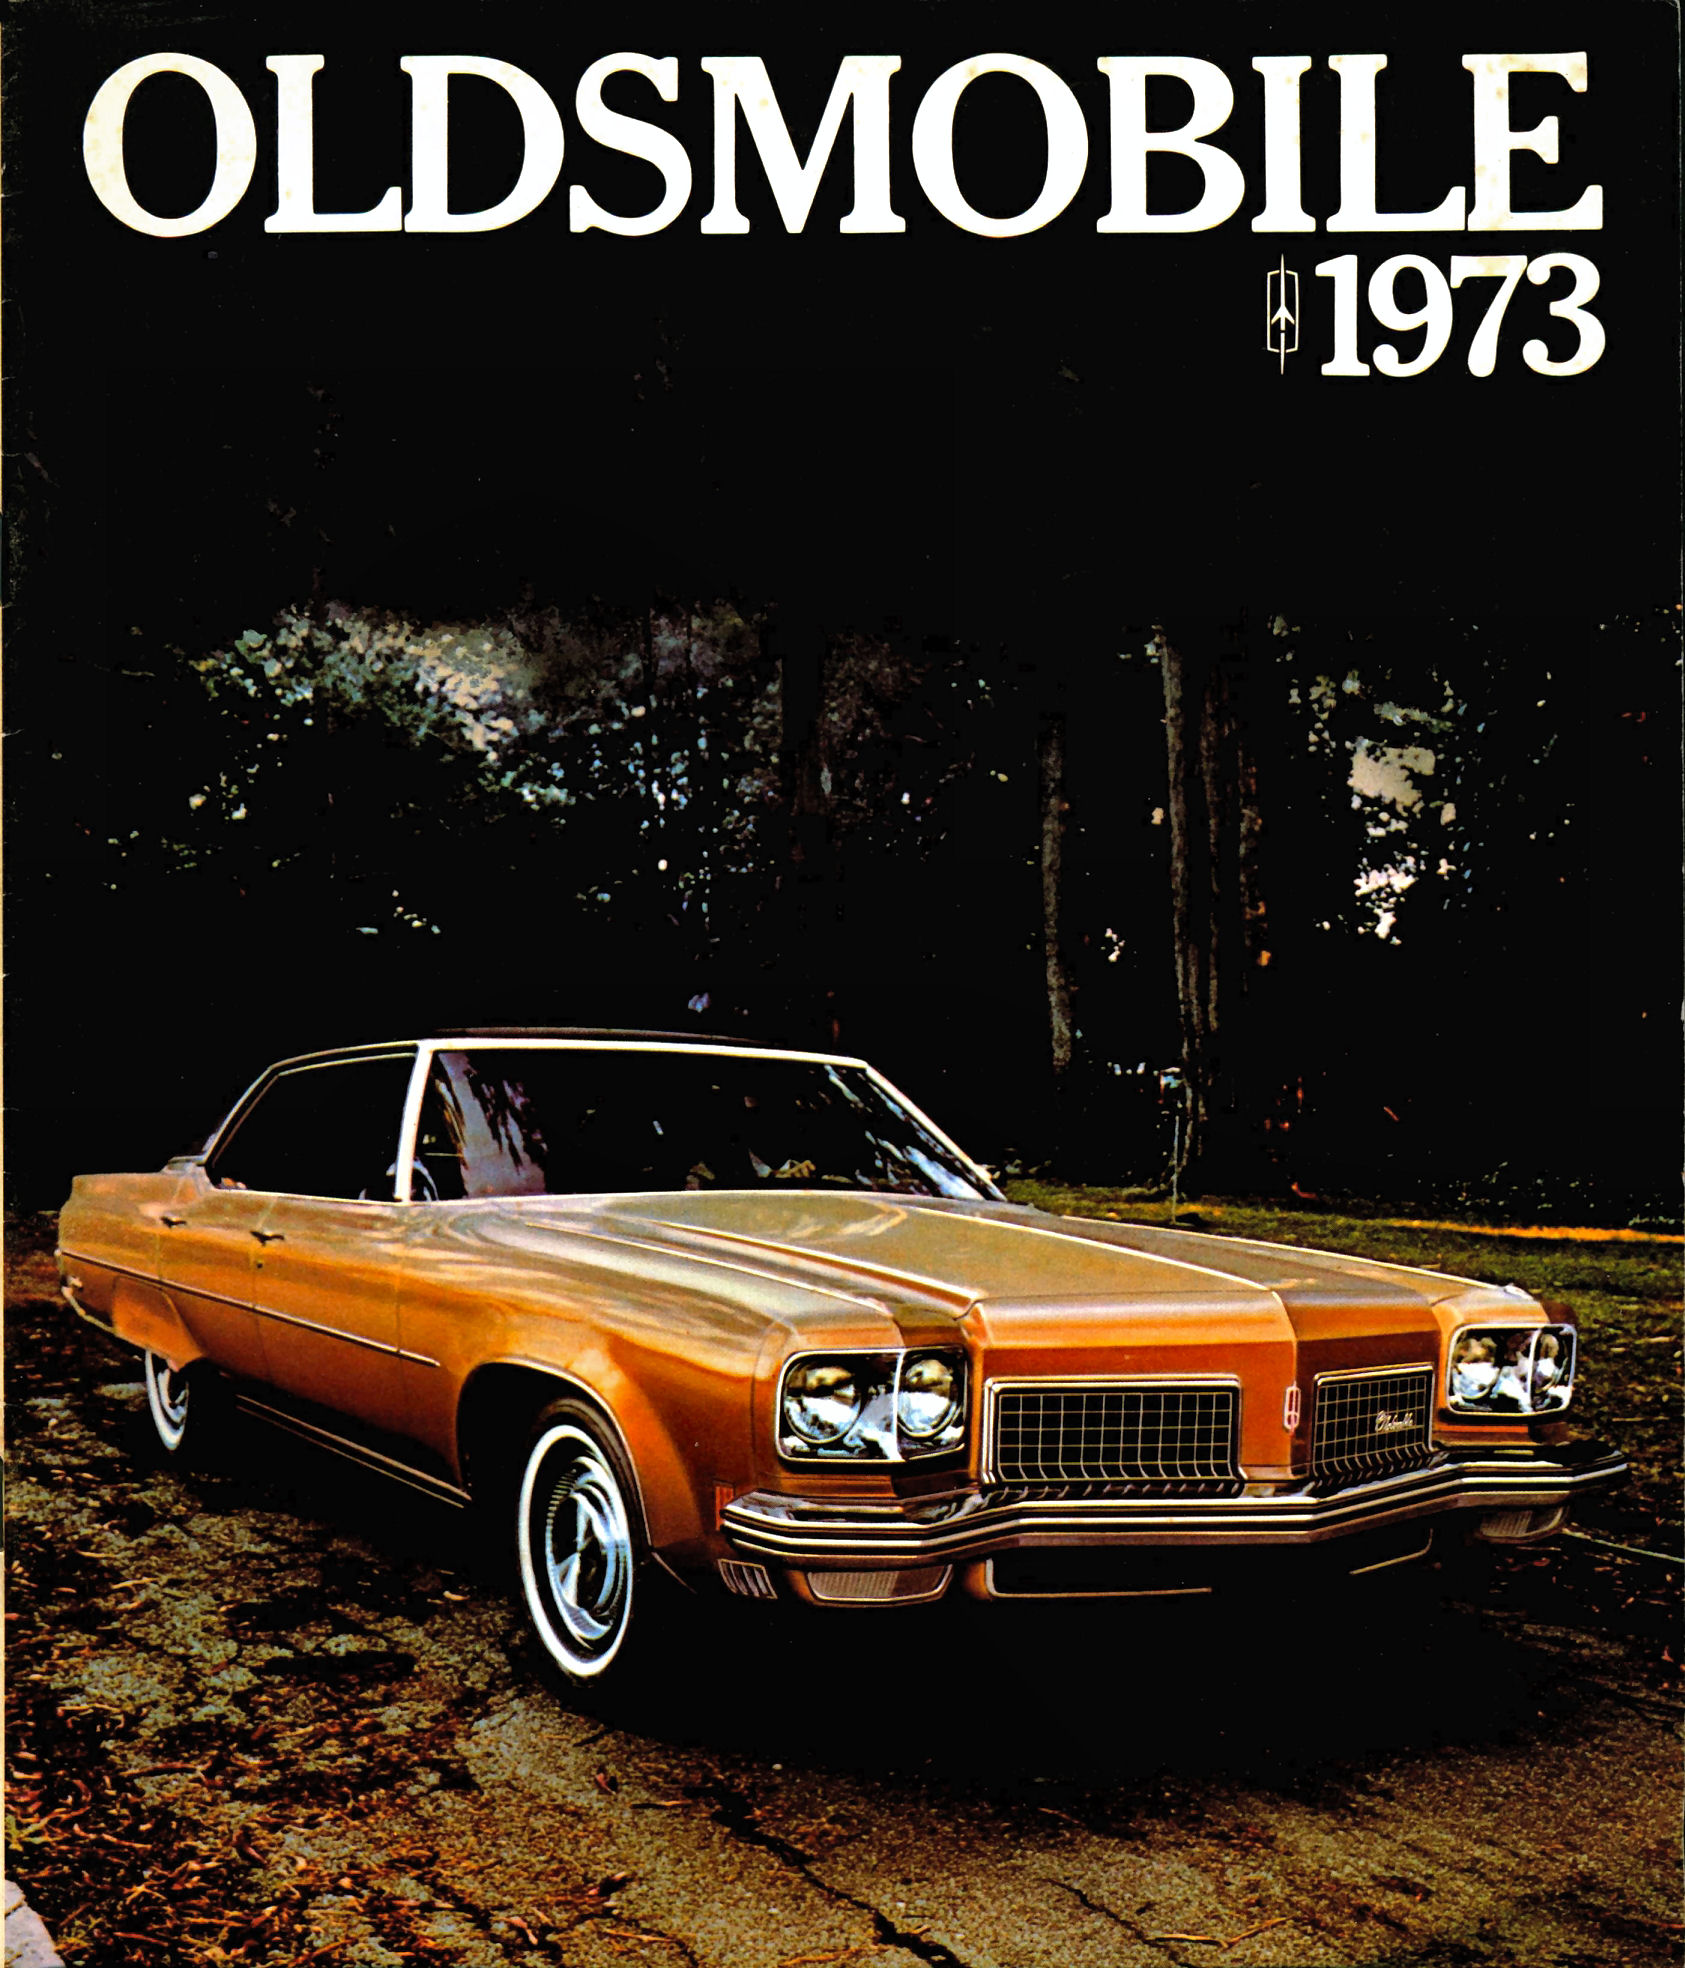 1973_Oldsmobile_Full_Size_Cdn-01